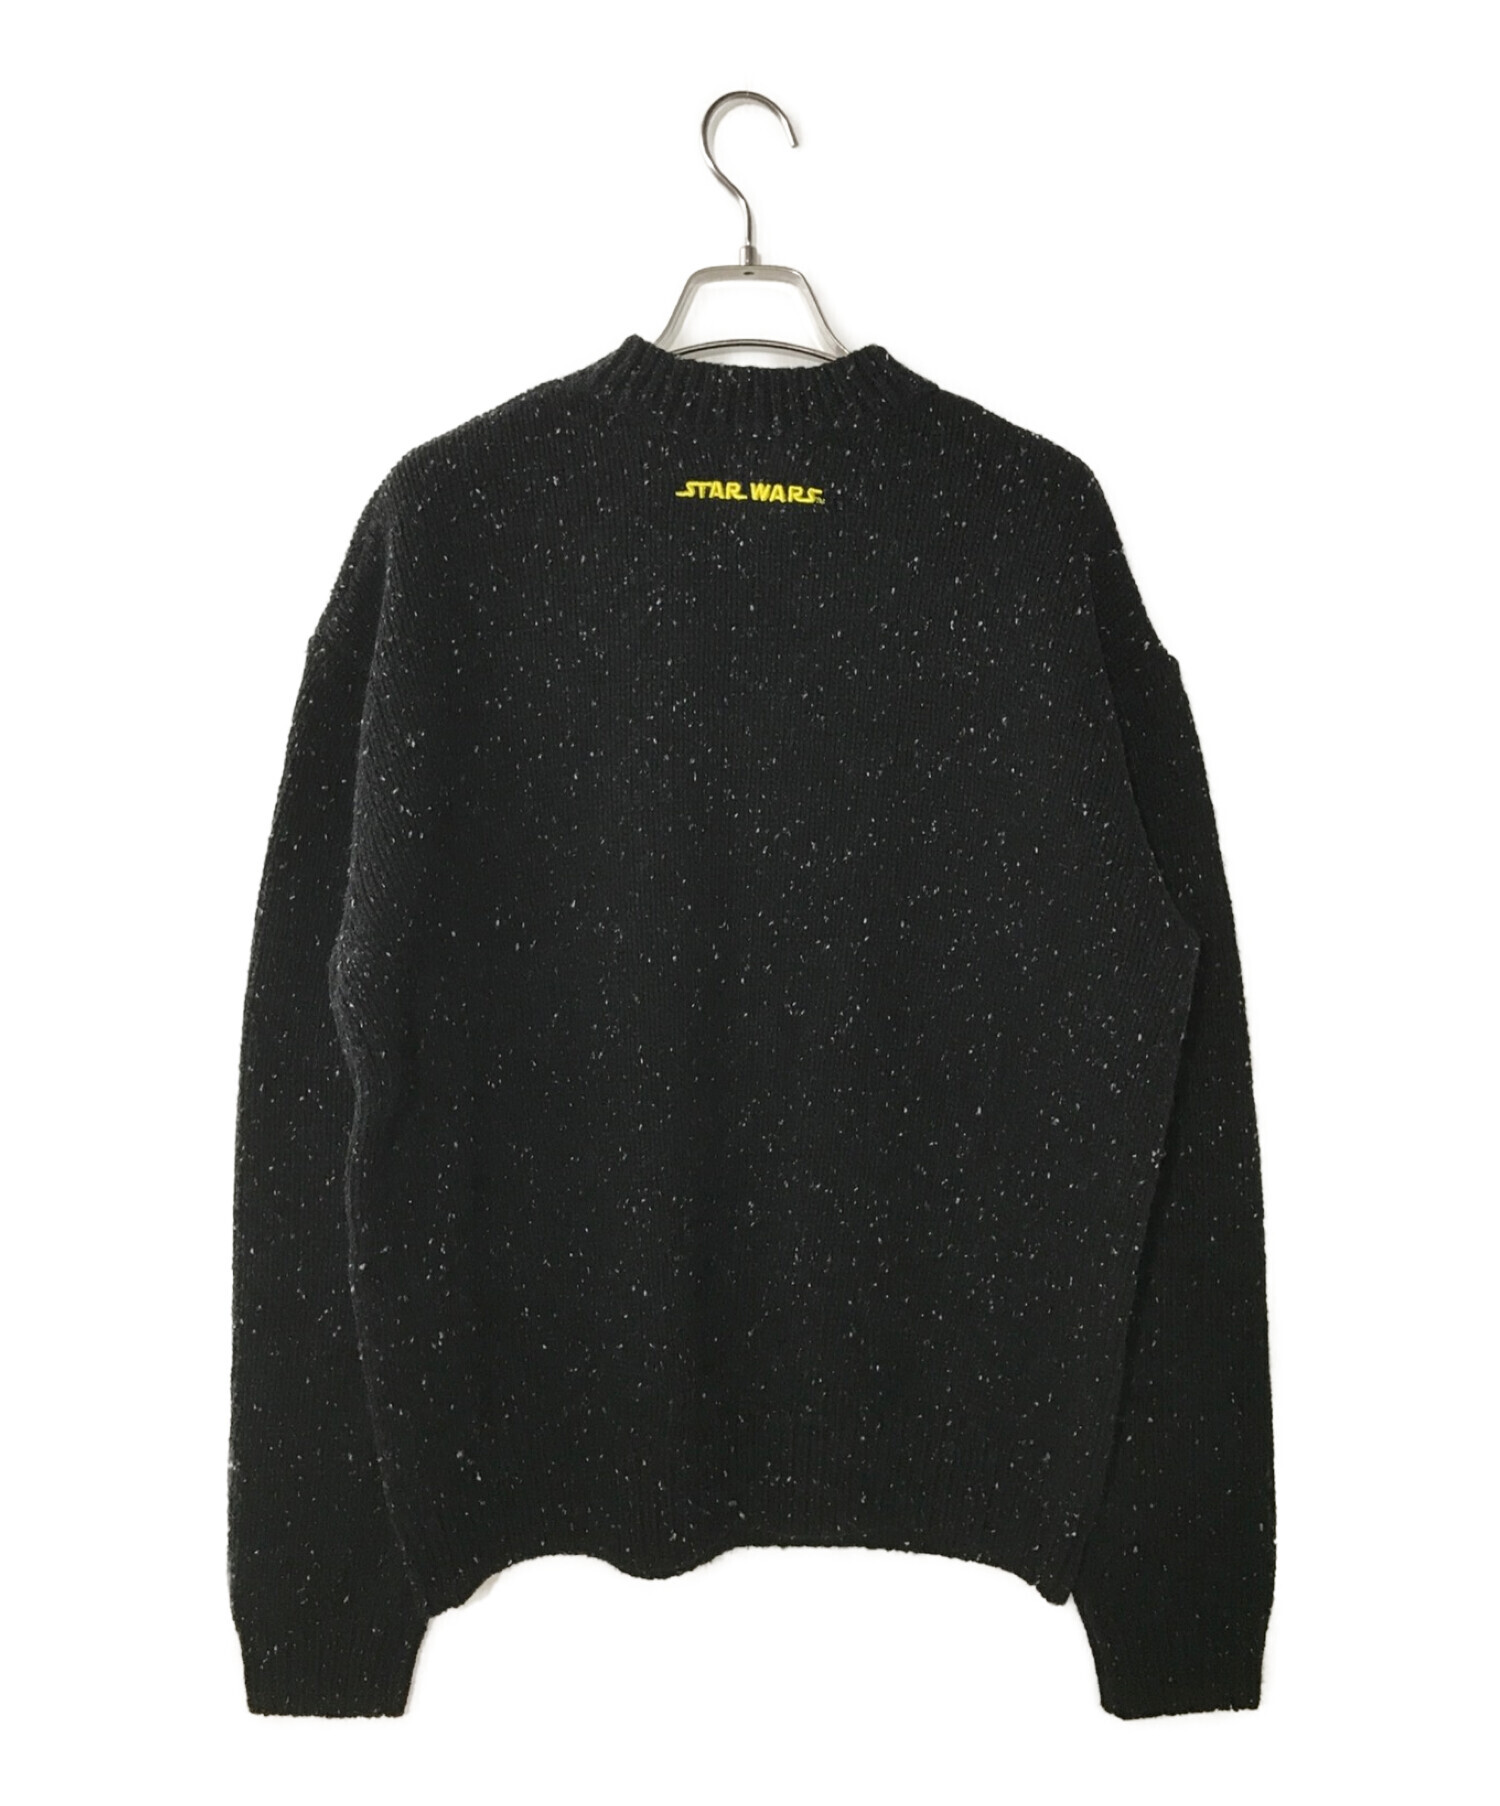 KITH (キス) STAR WARS (スターウォーズ) Galaxy Crewneck Sweater ブラック サイズ:S